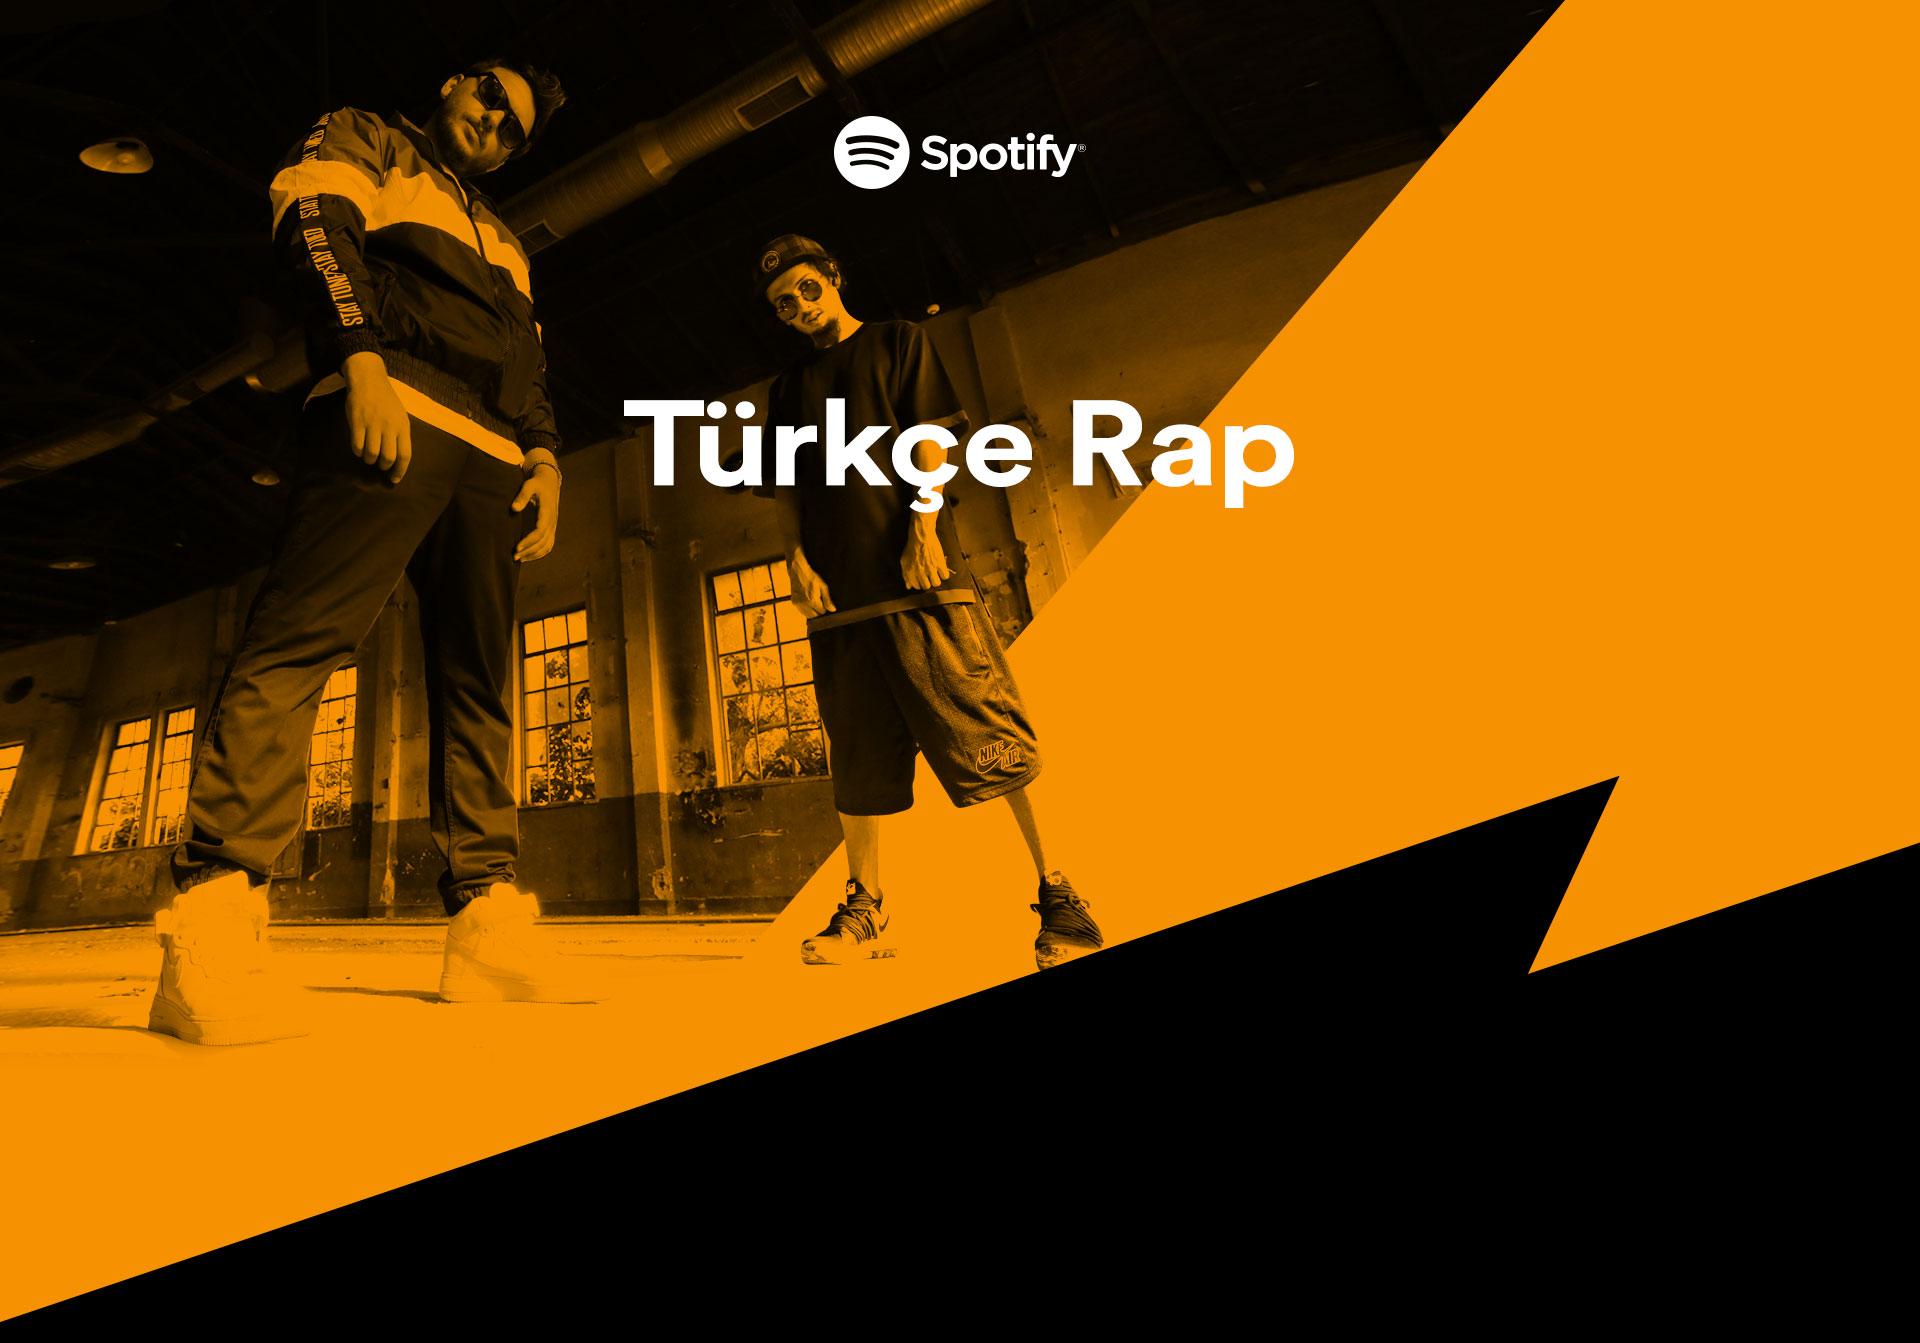 Spotify_Turkce_Rap_01